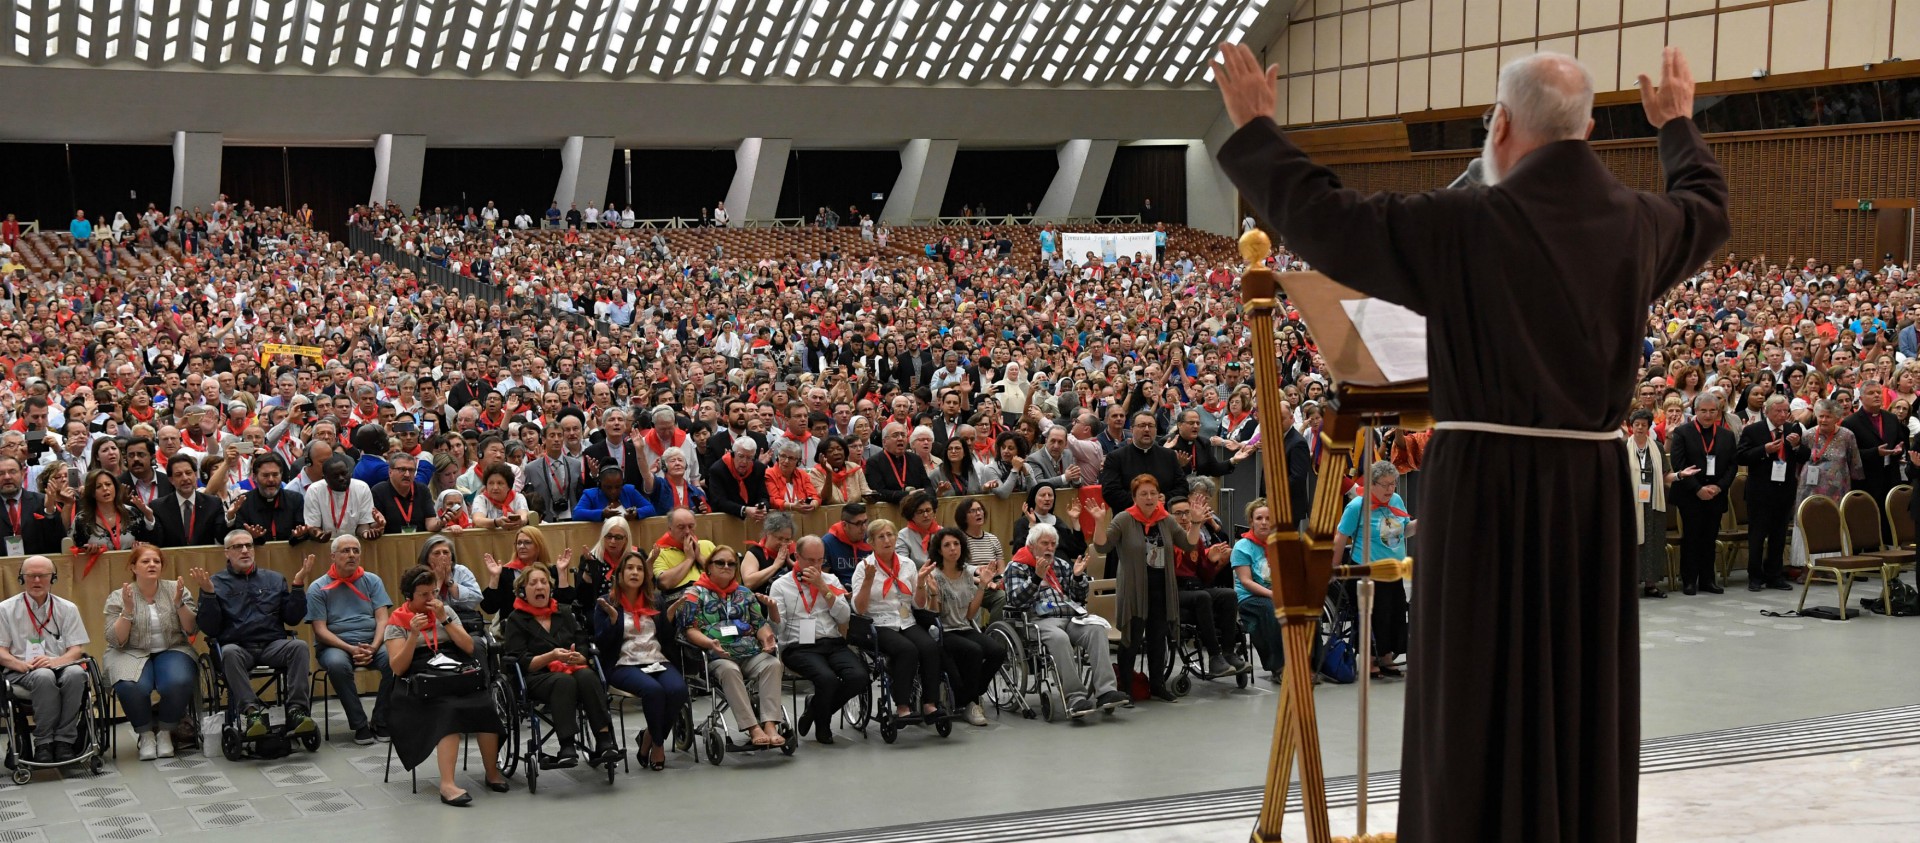 Prédication du Père Raniero Cantalamessa, lors de la rencontre du Renouveau Charismatique Catholique, le 8 juin 2019 à Rome | © charis.international